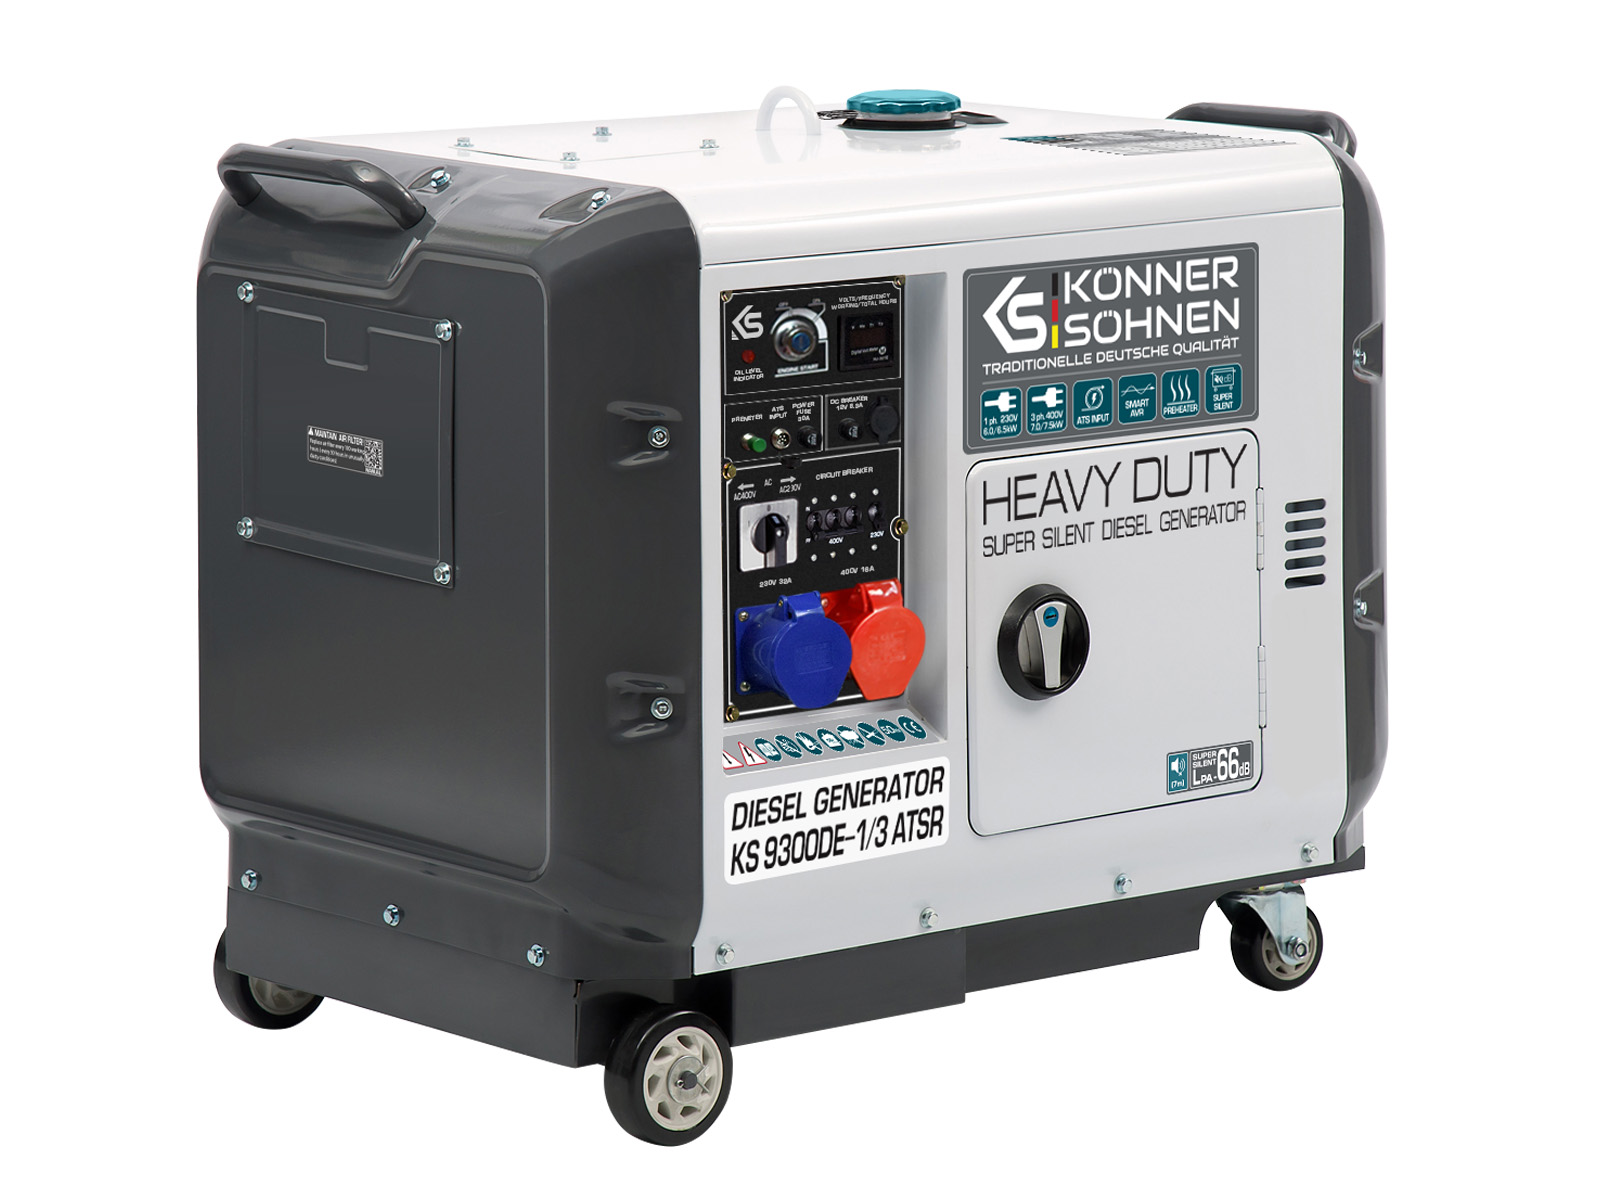 Könner & Söhnen Diesel-Generator KS 9300 DE 1/3 ATSR 230V/380V